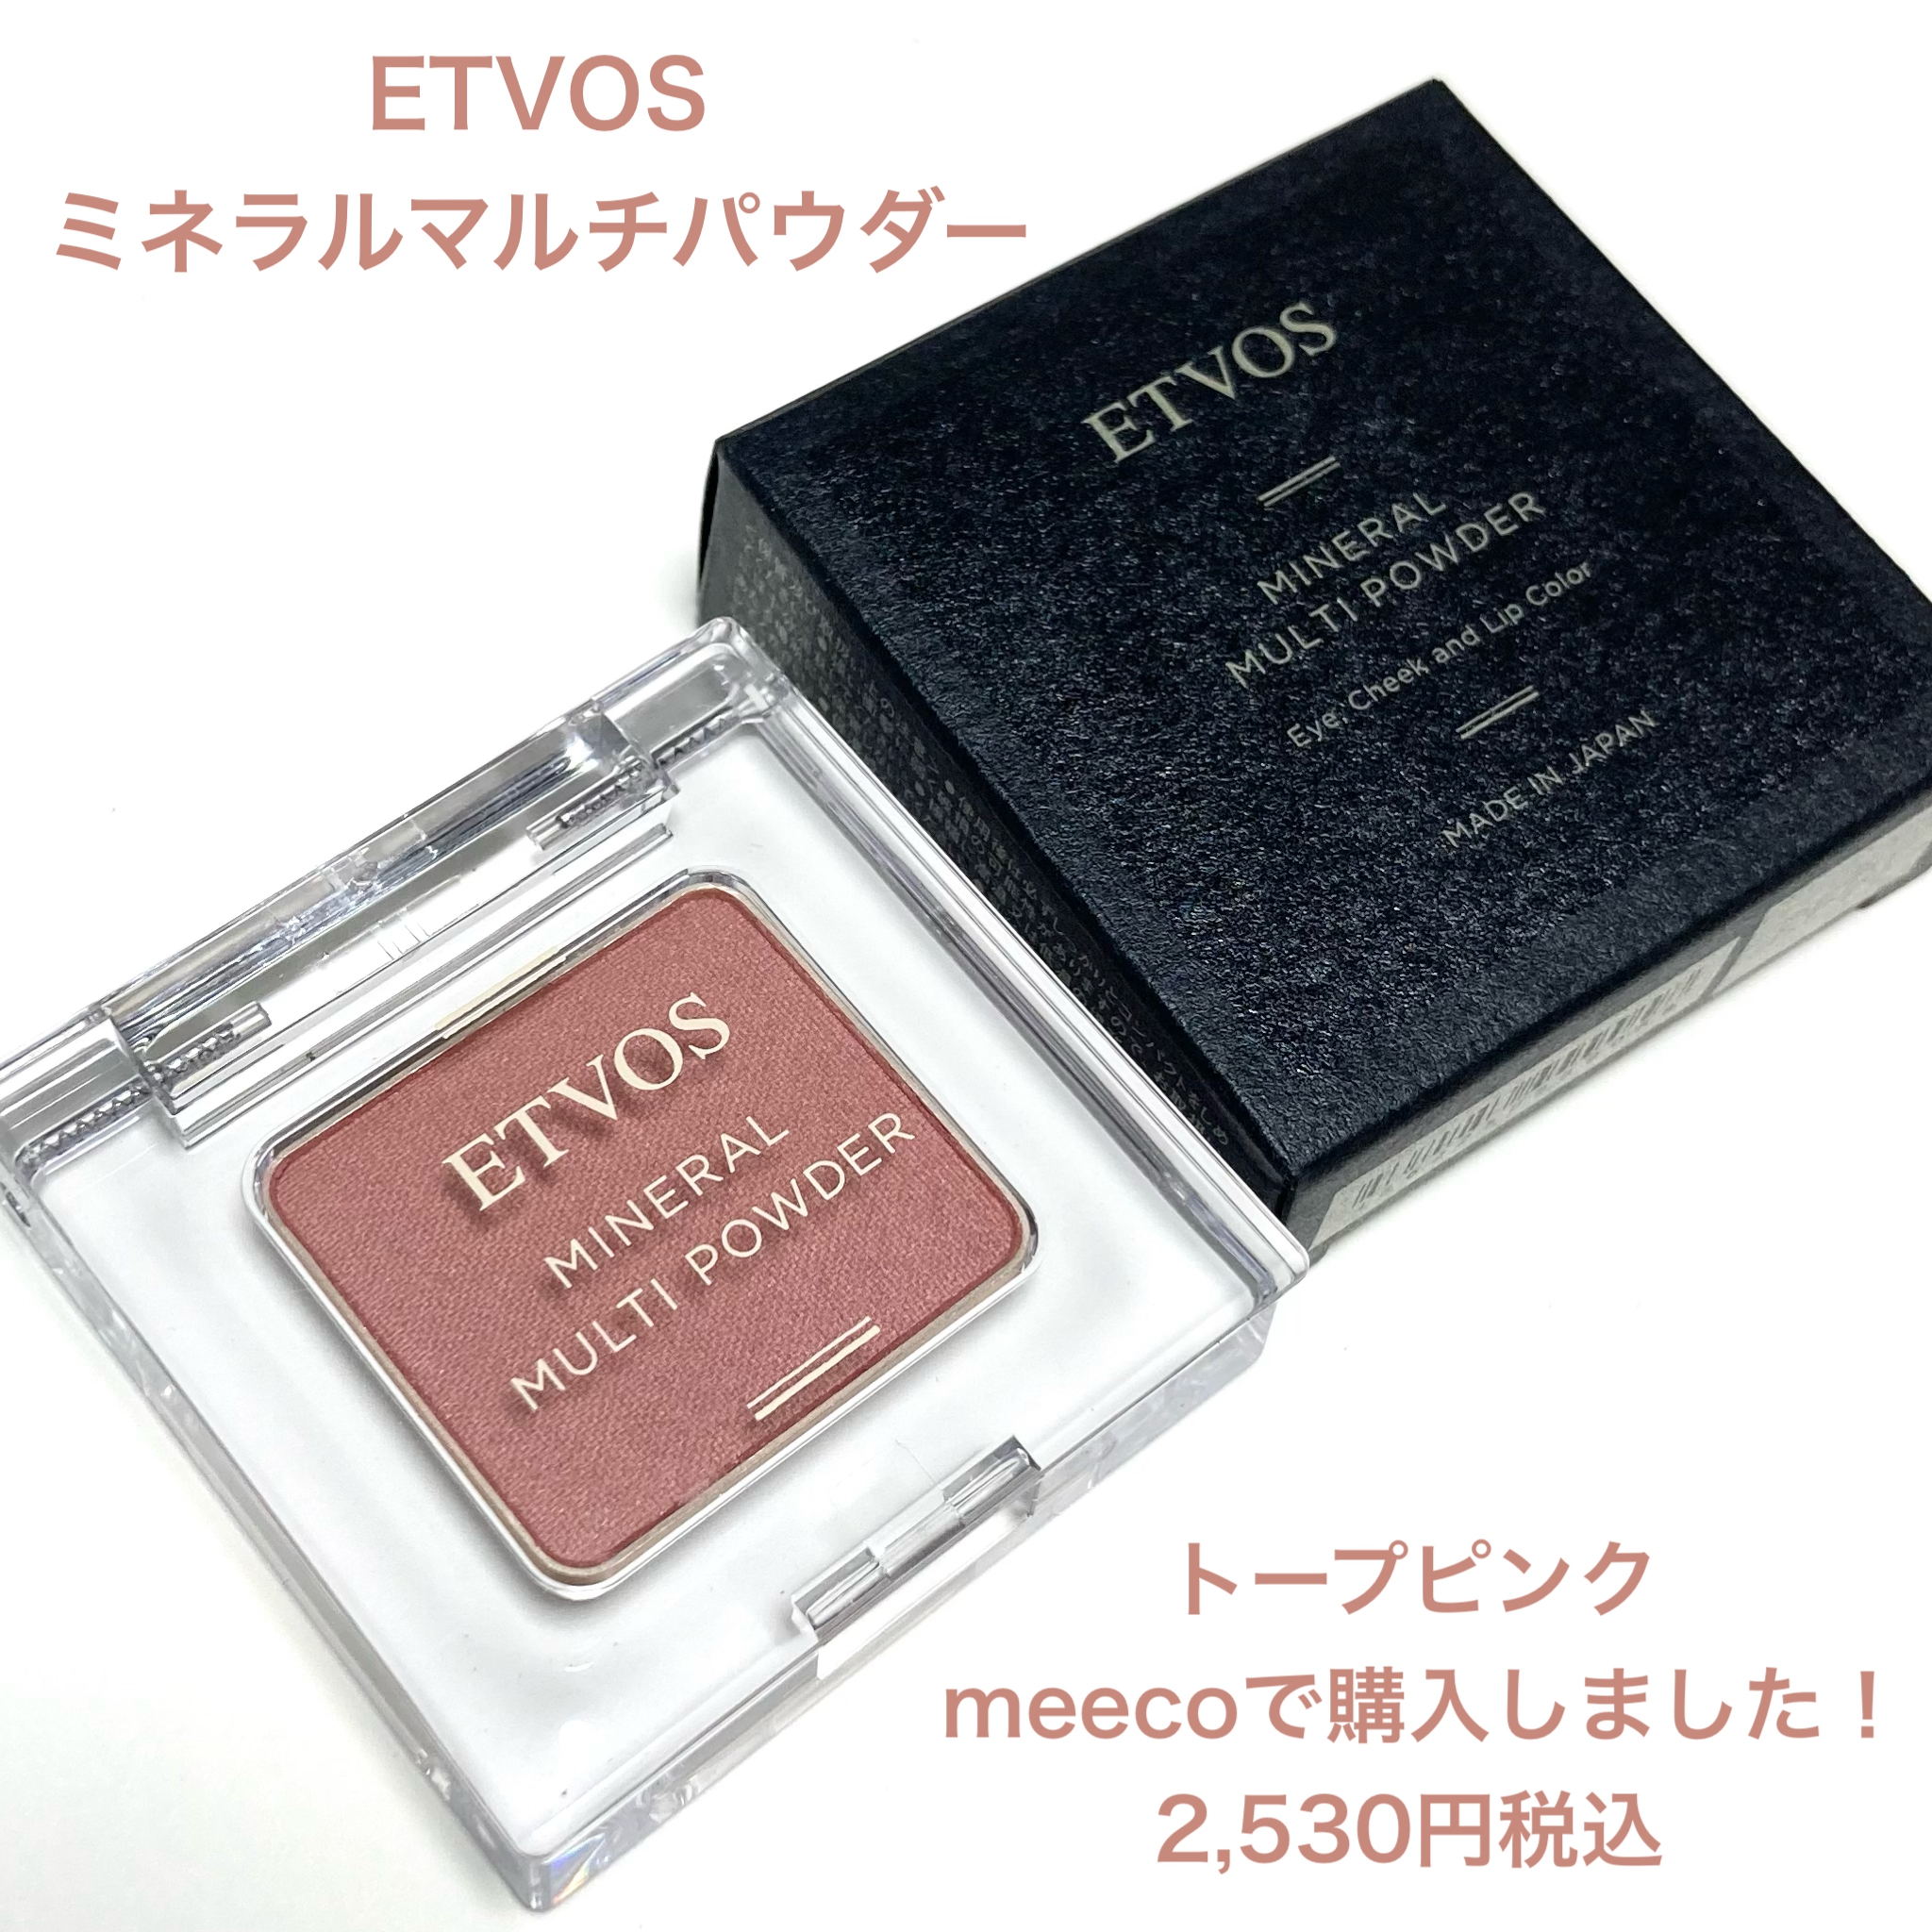 ETVOS(エトヴォス) ミネラルマルチパウダーの良い点・メリットに関する☆ふくすけ☆さんの口コミ画像2